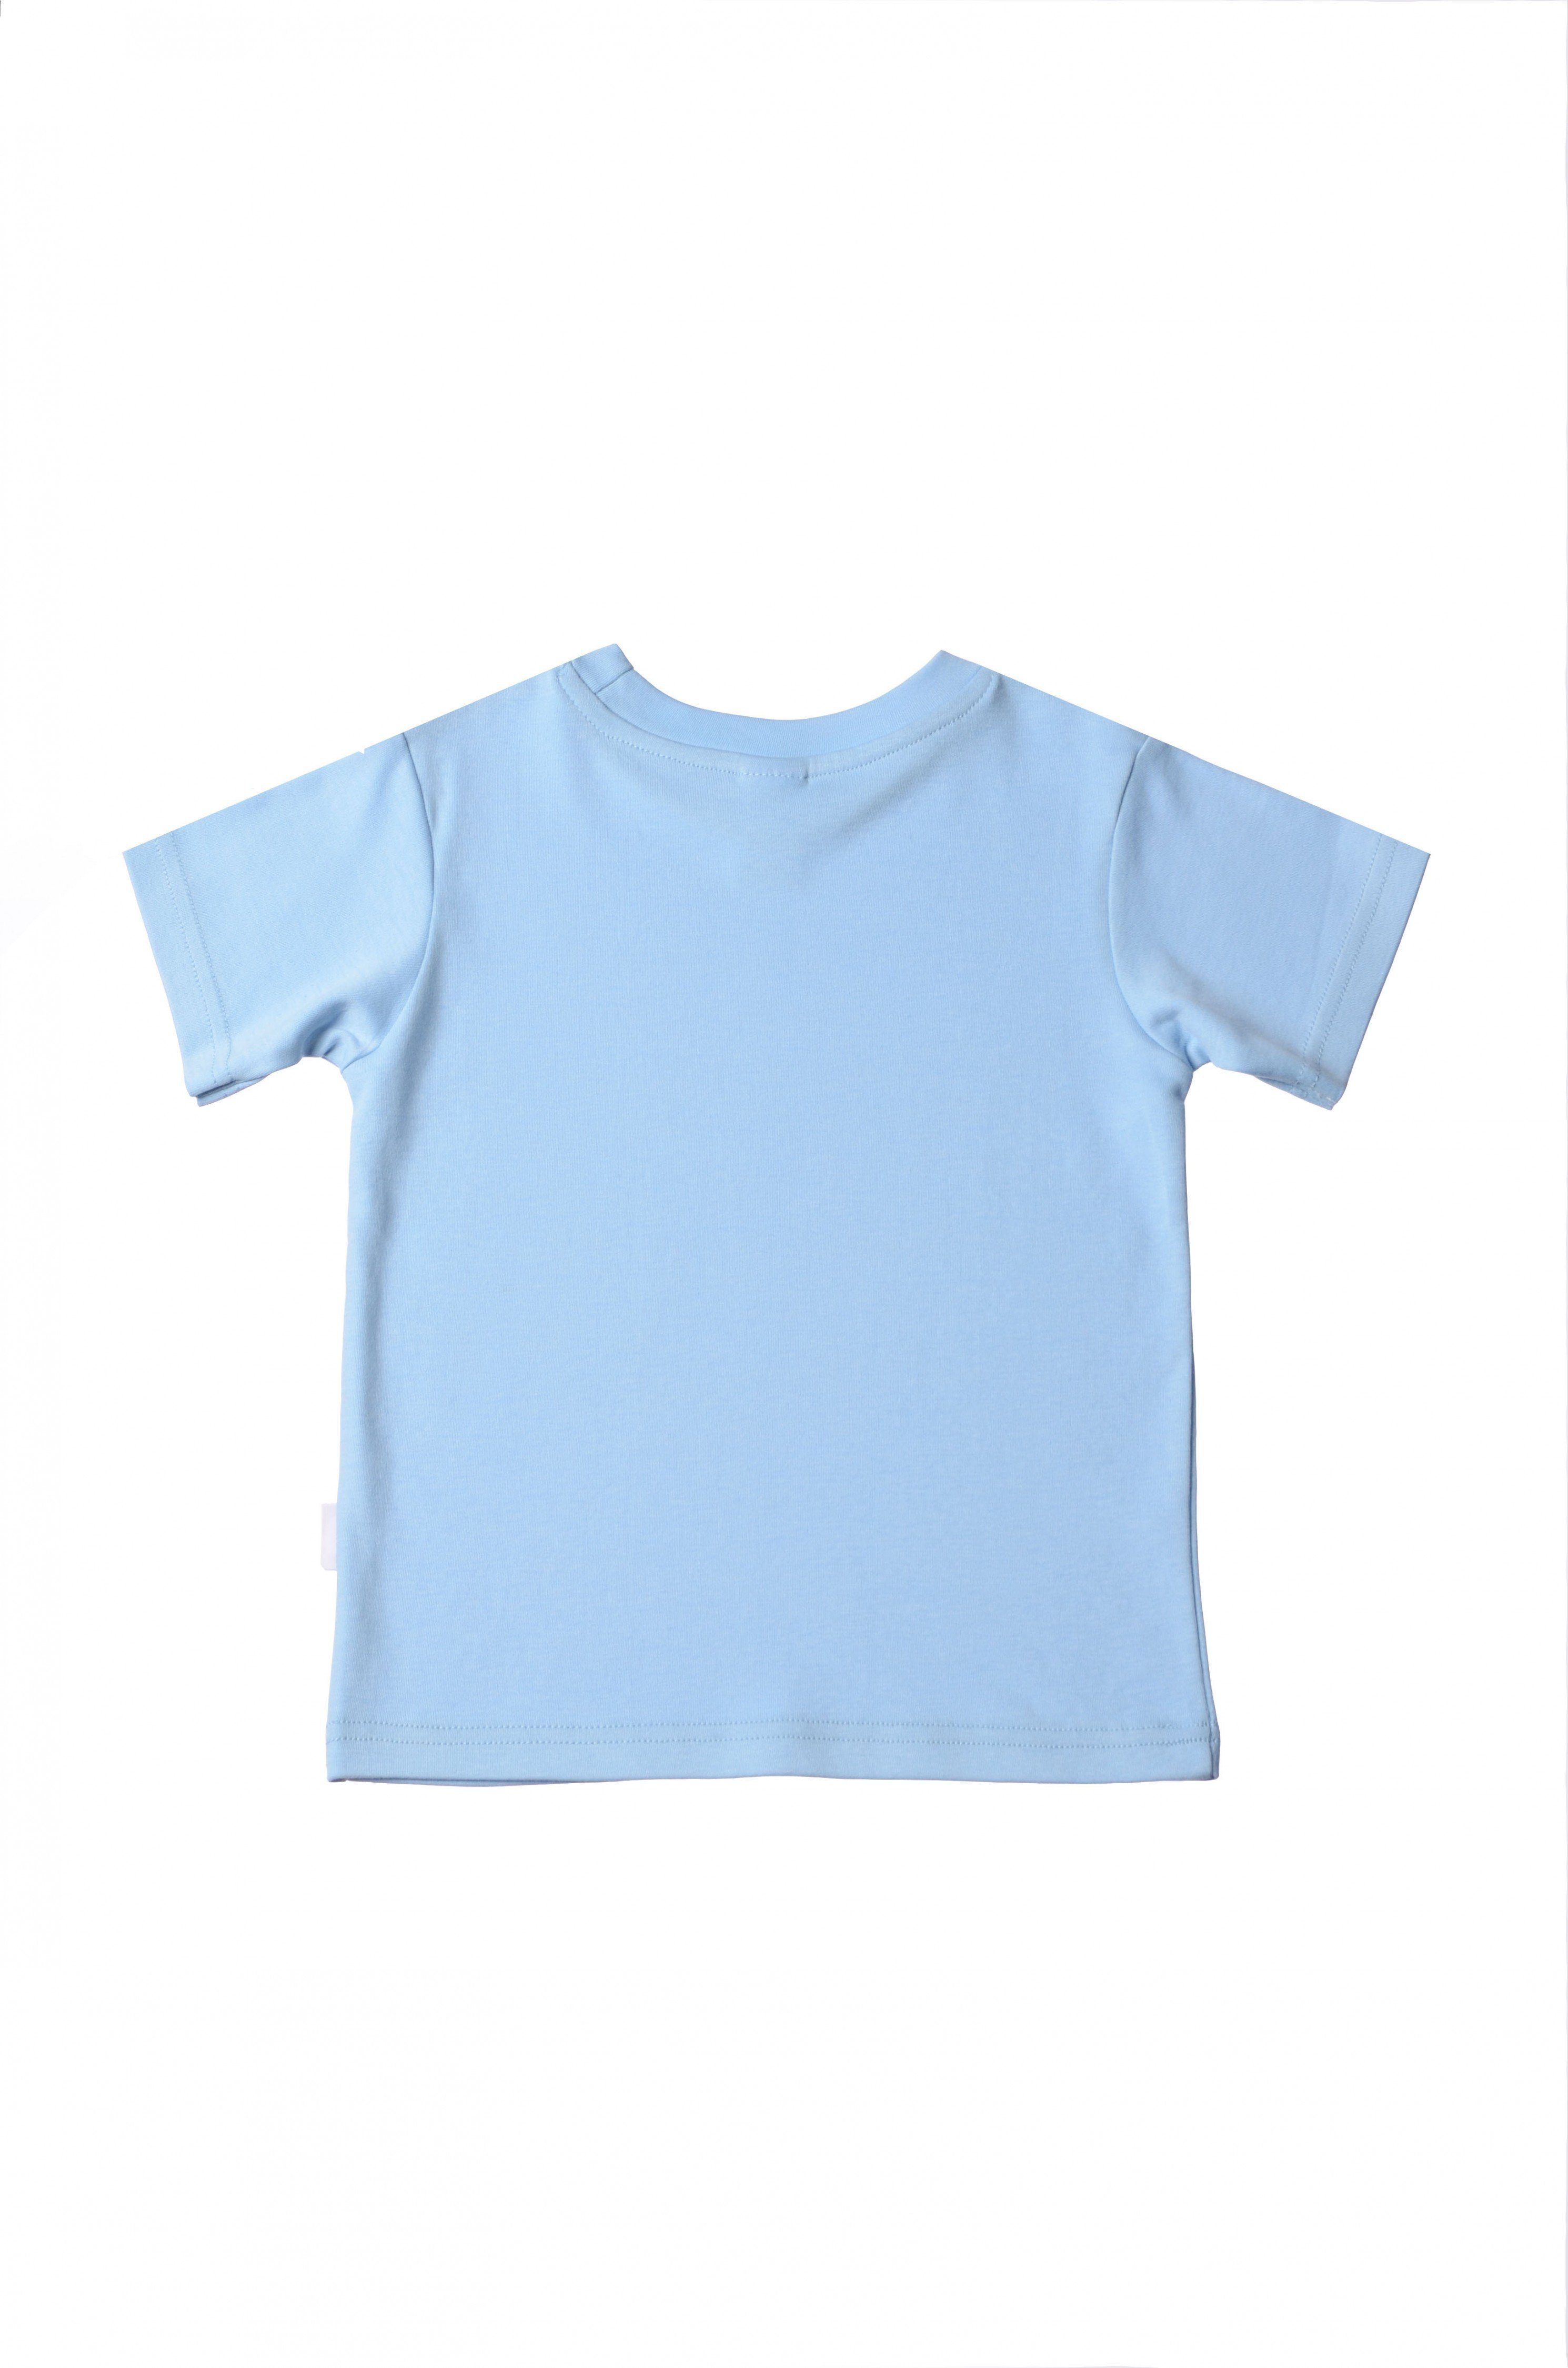 T-Shirt in niedlichem Liliput hellblau Design